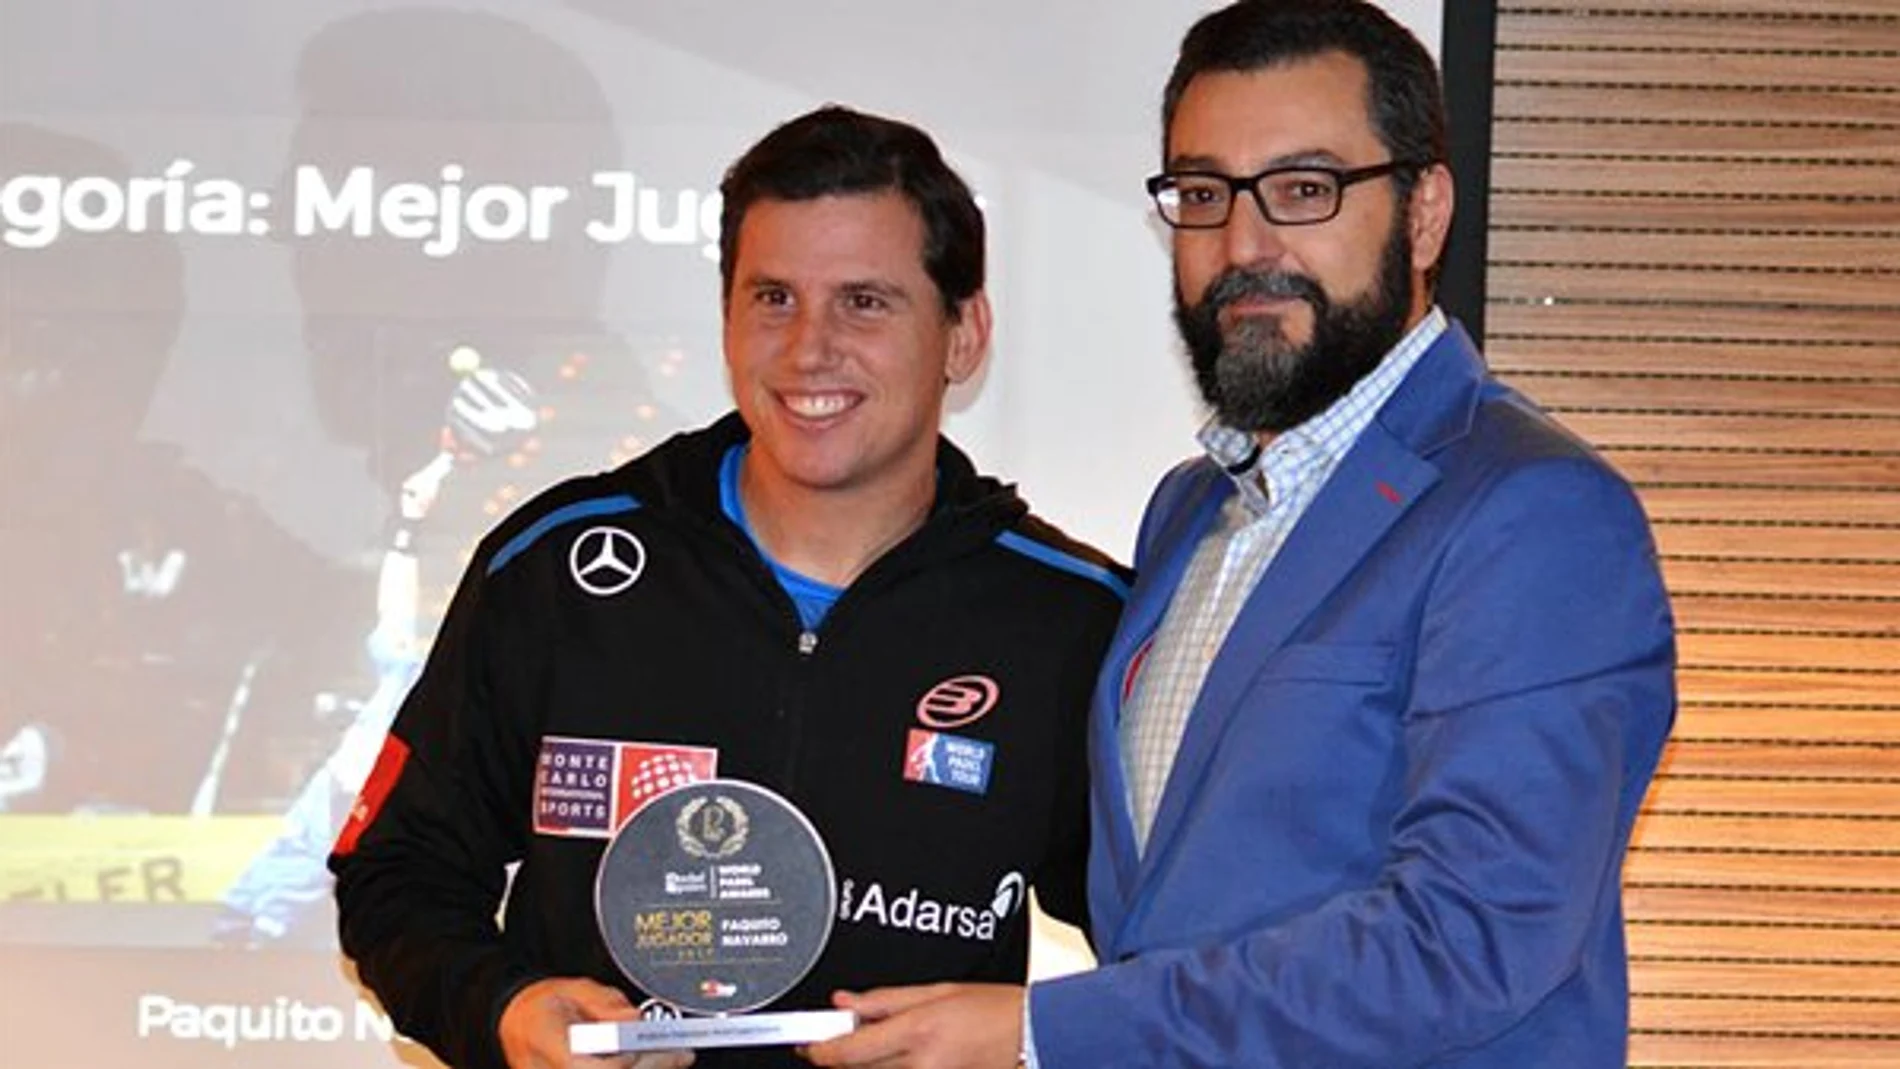 Paquito Navarro, recibiendo el premio de Mejor Jugador